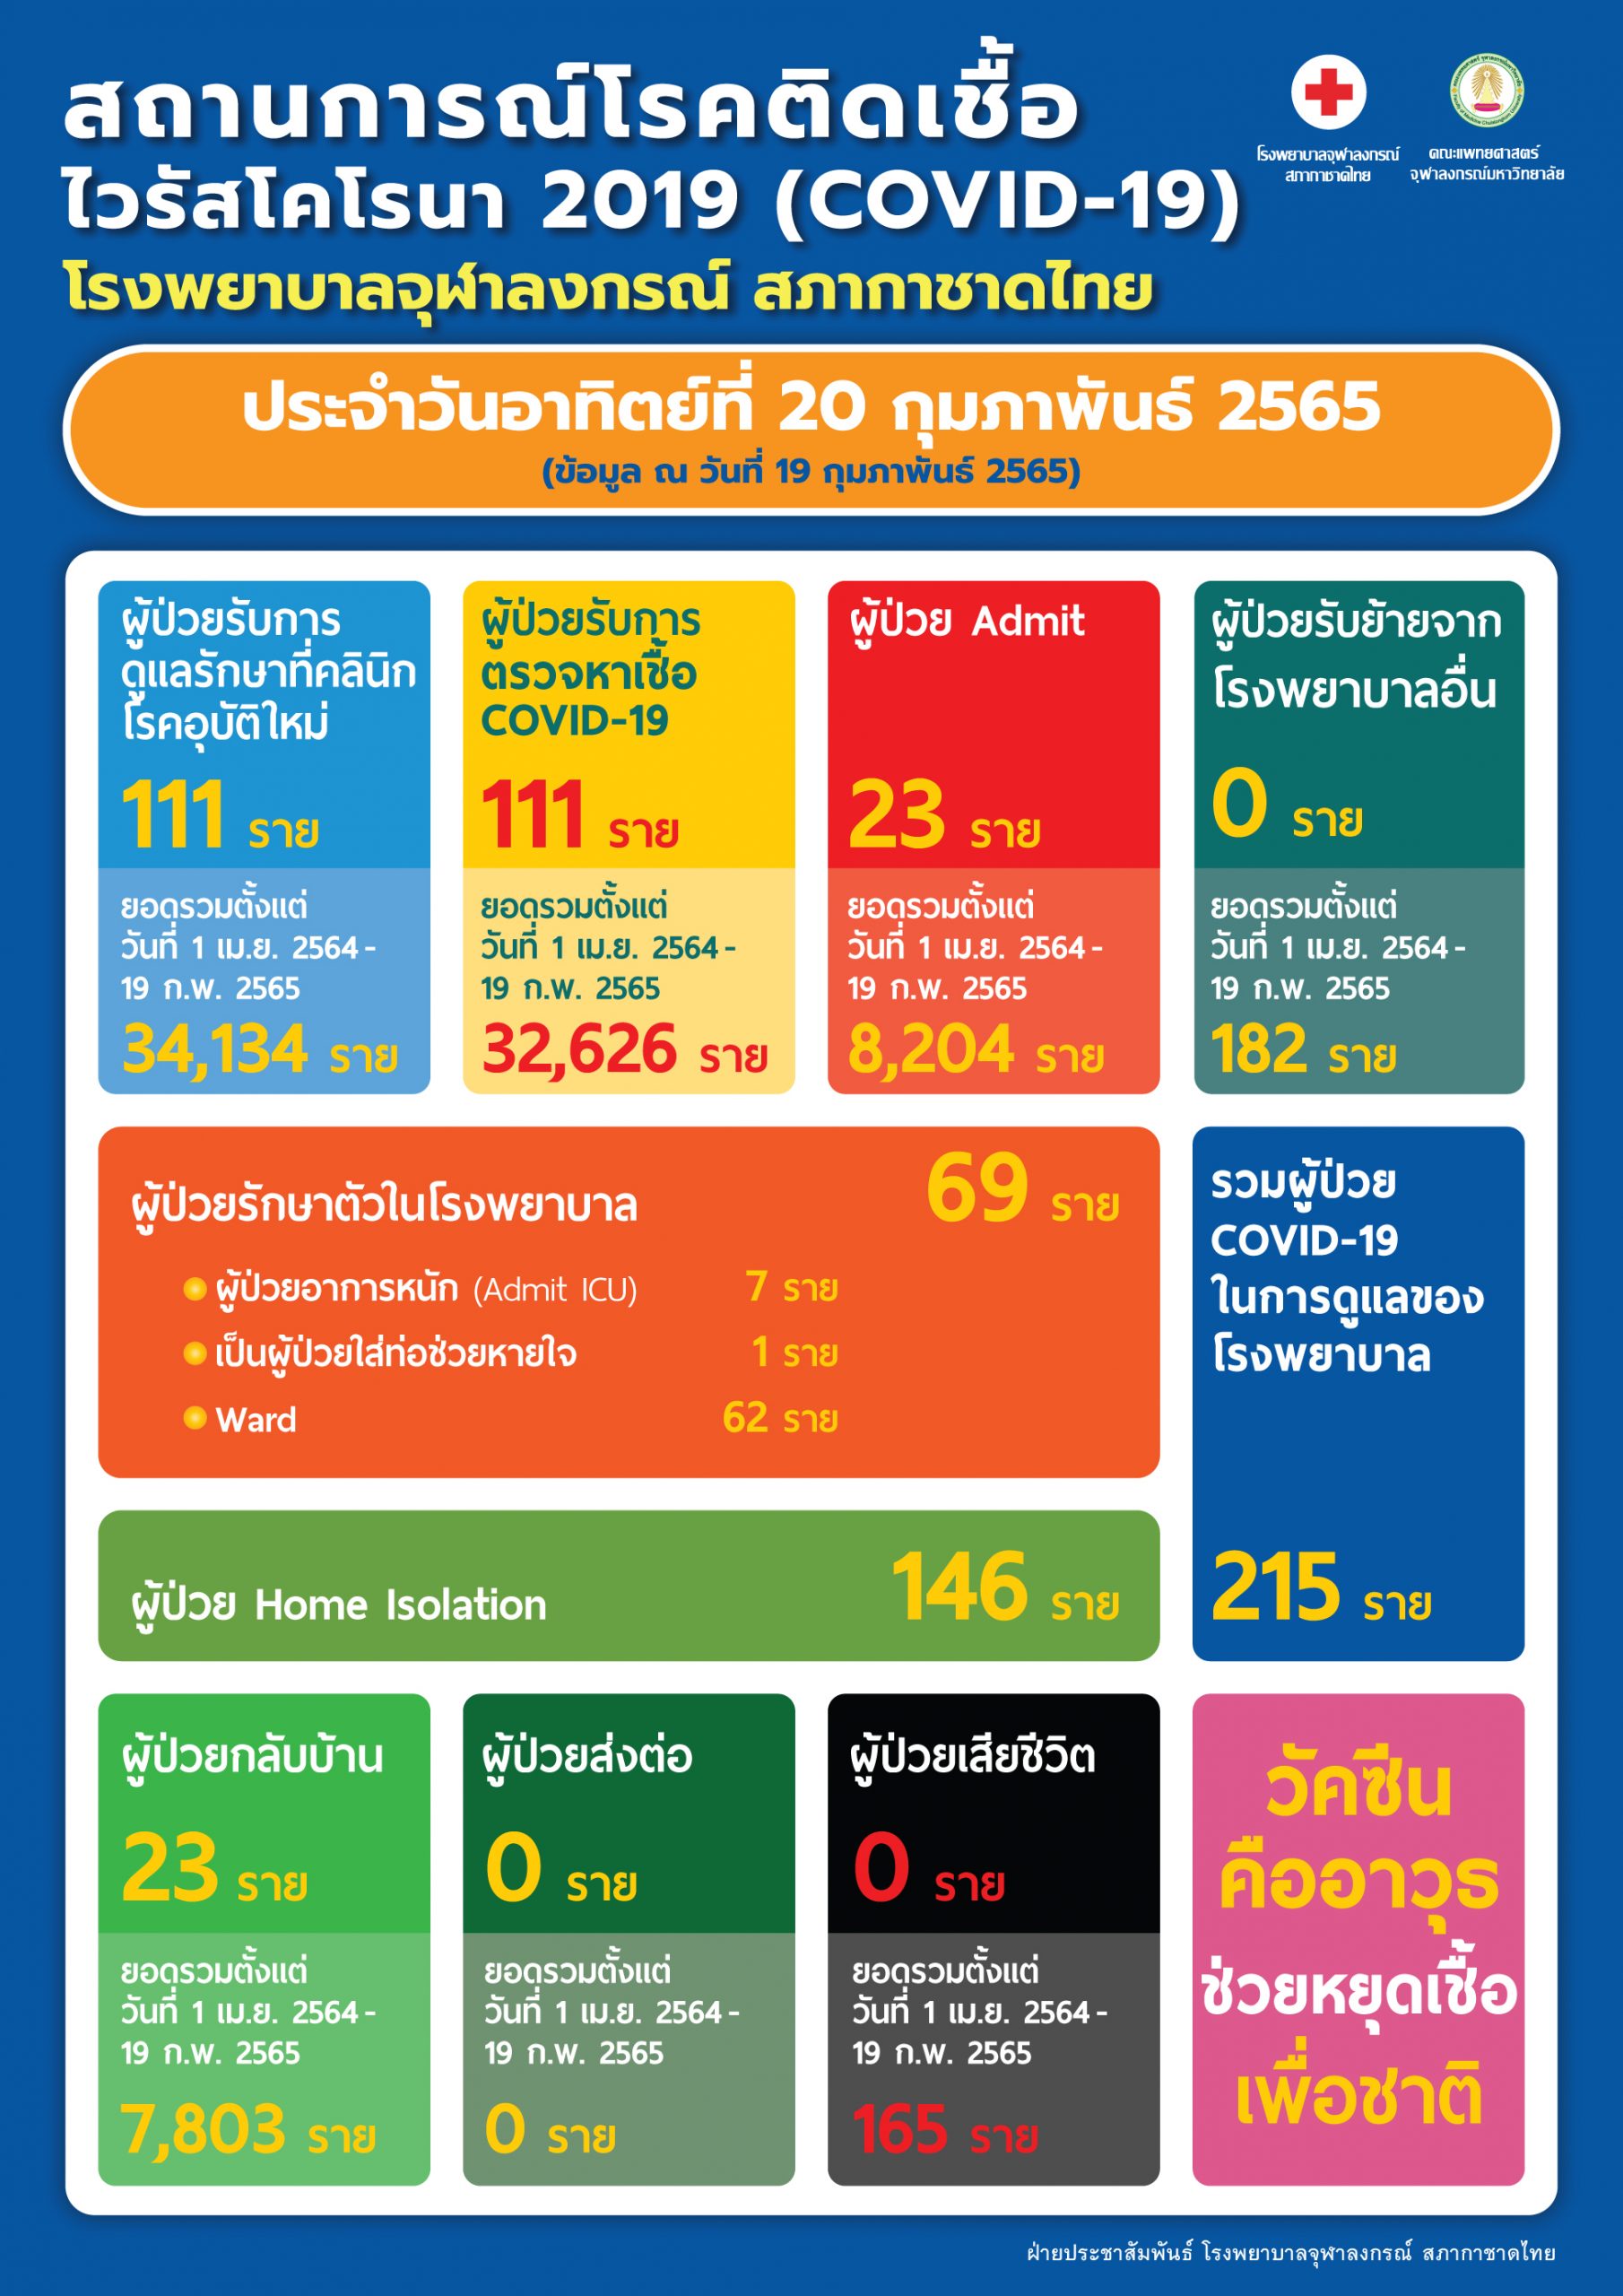 สถานการณ์โรคติดเชื้อไวรัสโคโรนา 2019 (COVID-19) โรงพยาบาลจุฬาลงกรณ์ สภากาชาดไทย ประจำวันอาทิตย์ที่ 20 กุมภาพันธ์ 2565